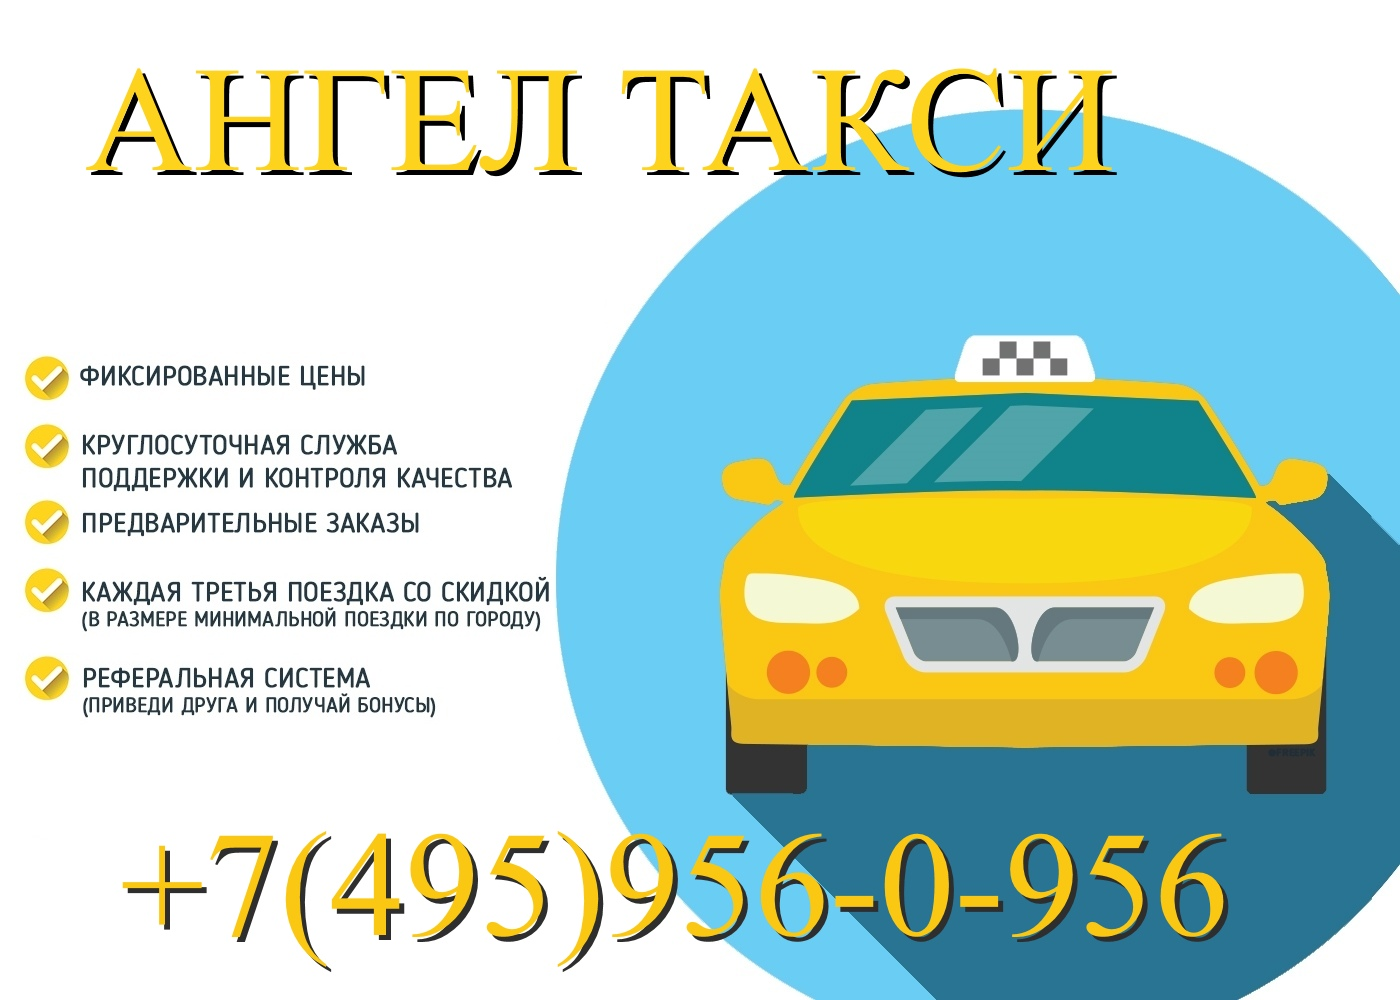 Междугороднее такси москва. Визитка такси. Такси ангел. Реклама такси. Междугородние поездки такси.